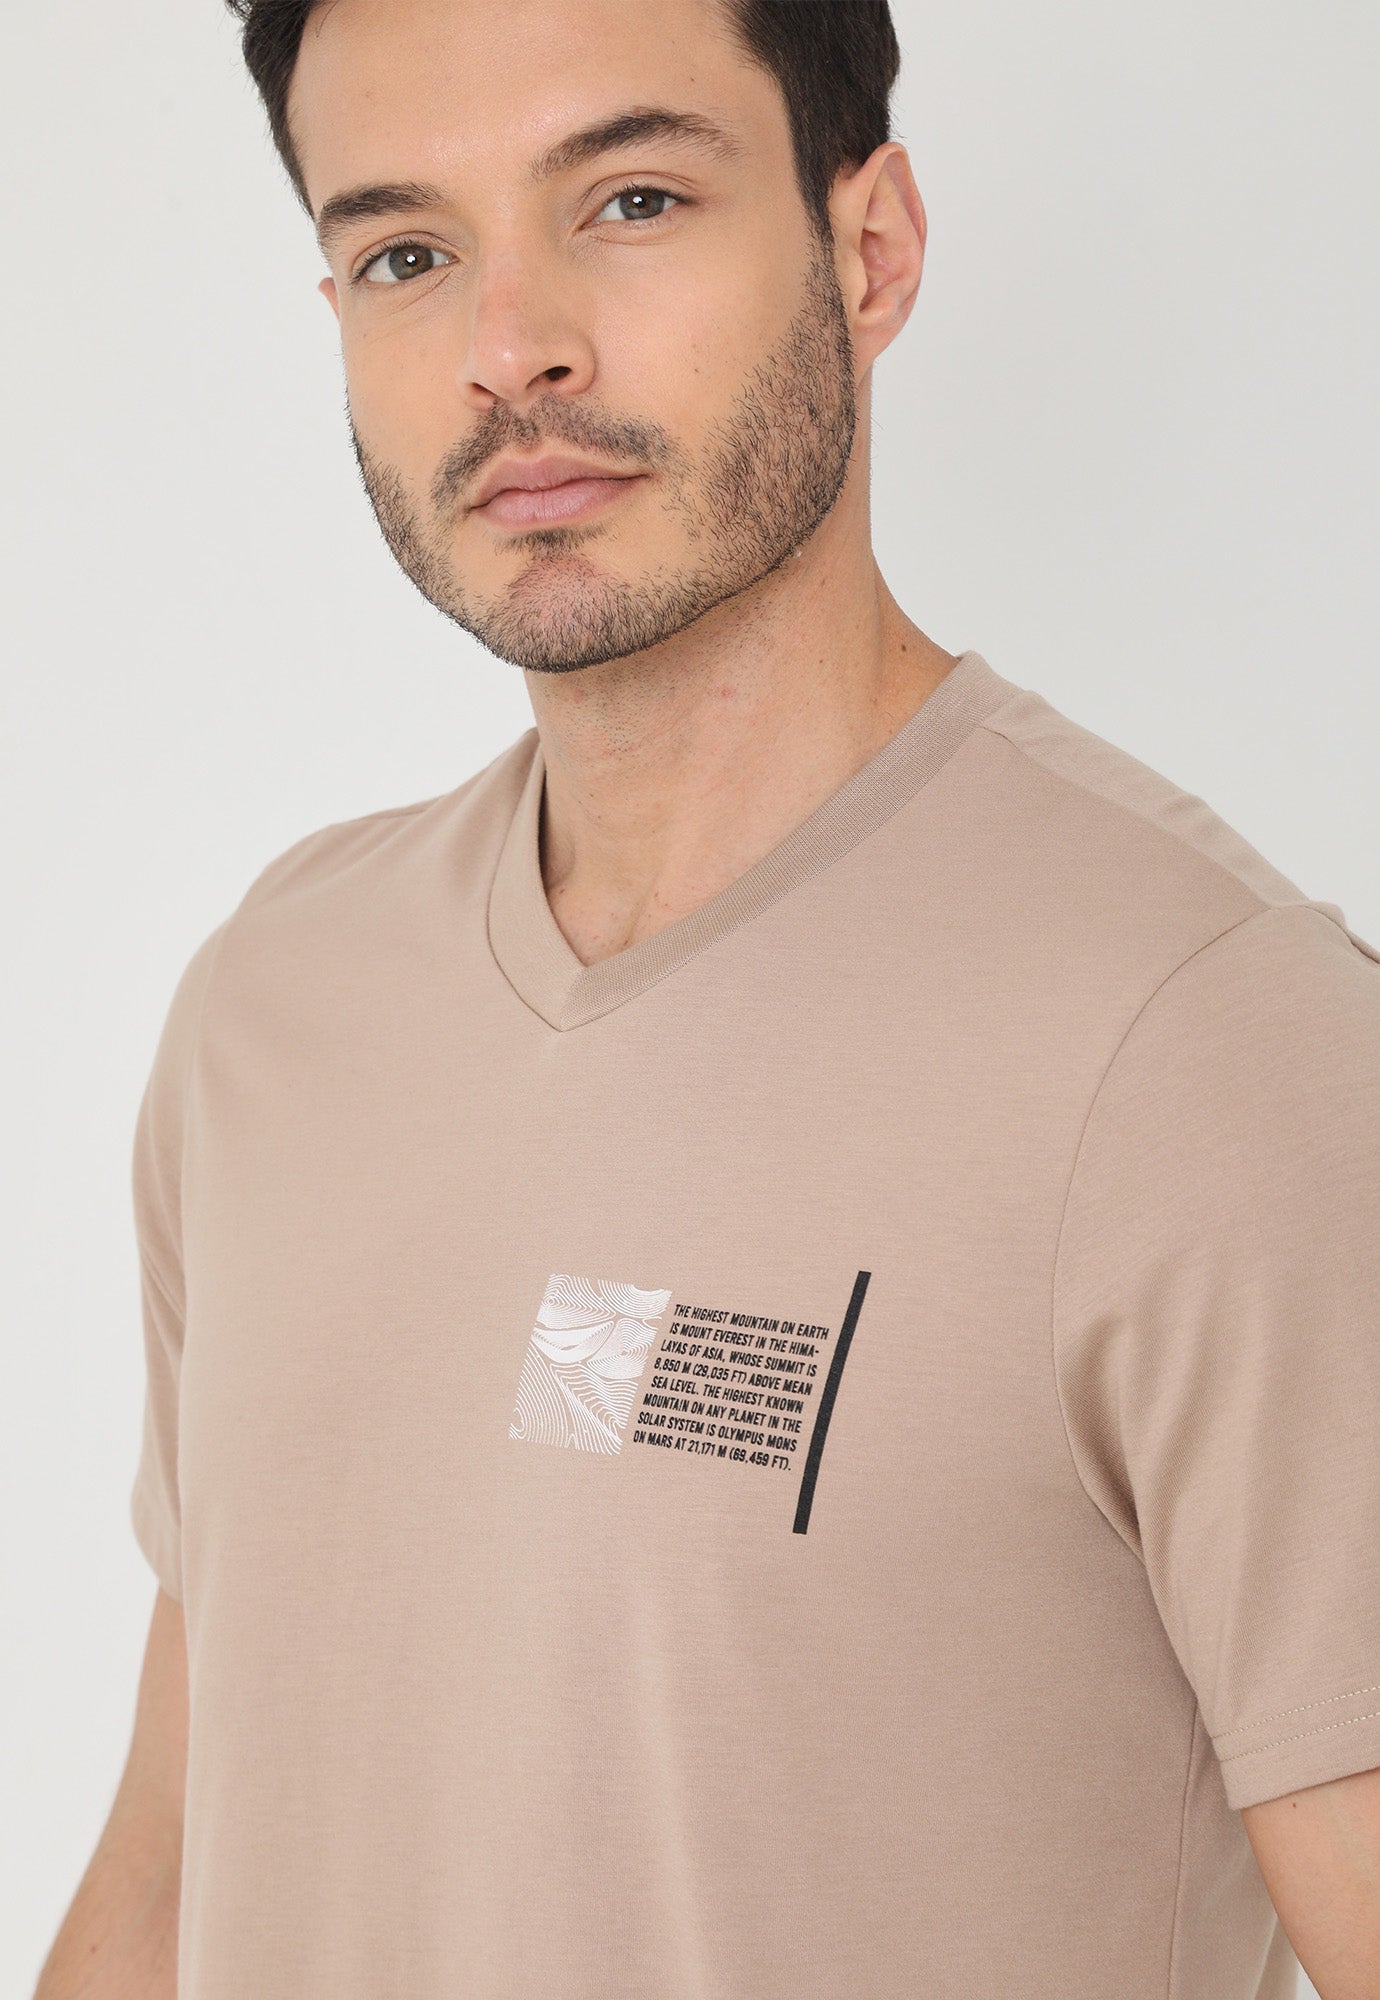 Camiseta café manga corta, estampado frontal y cuello en v para hombre